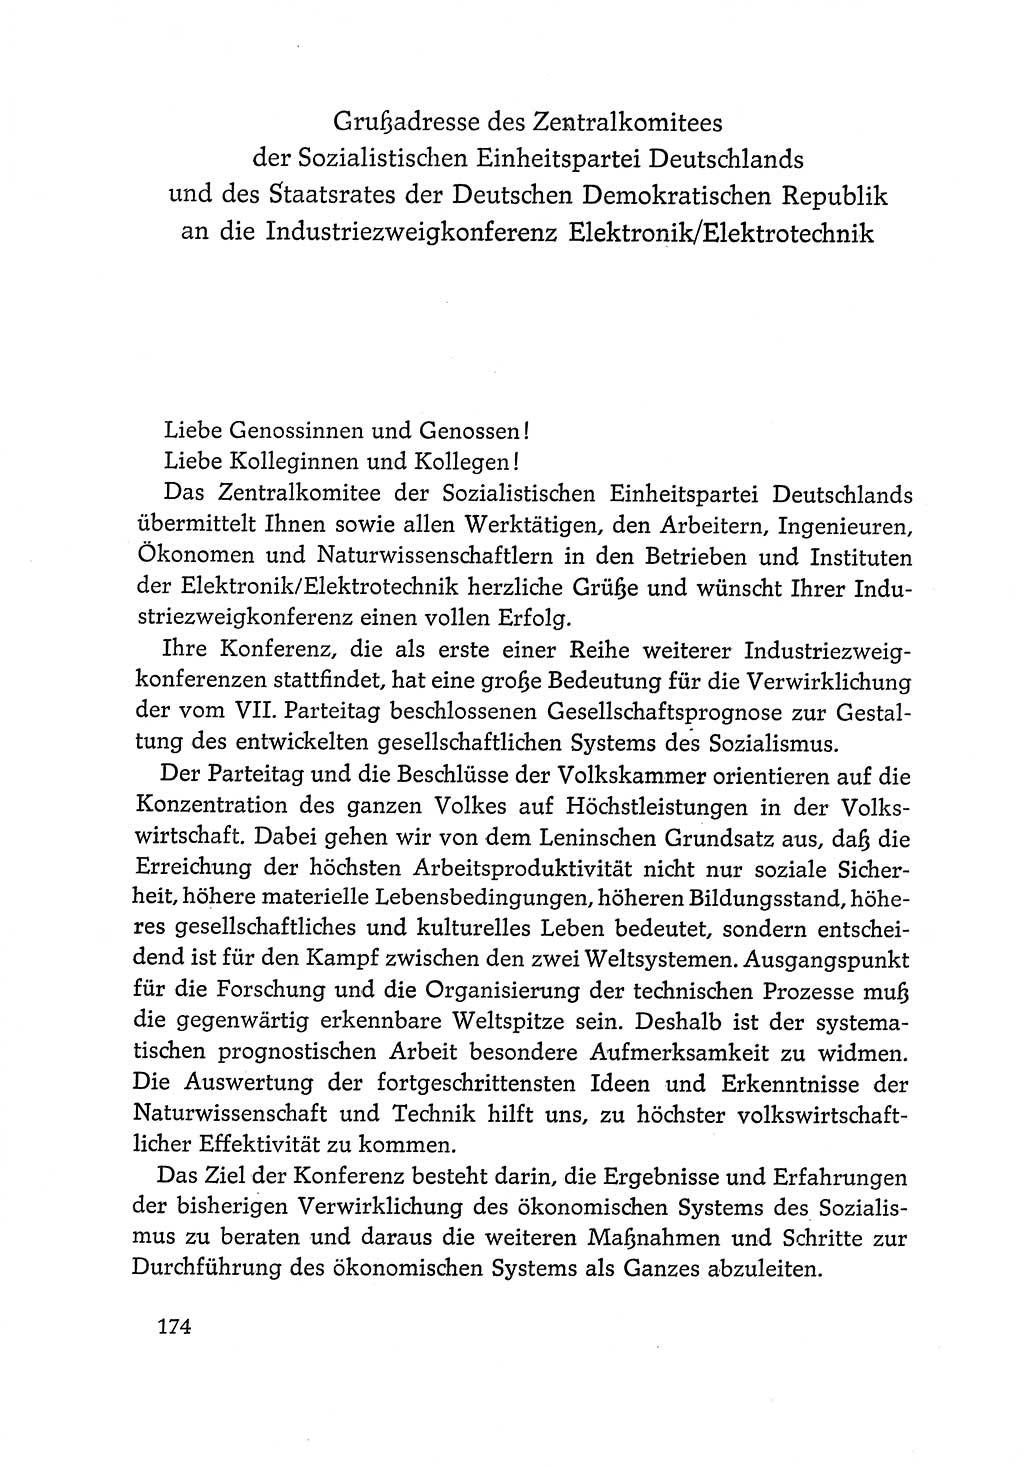 Dokumente der Sozialistischen Einheitspartei Deutschlands (SED) [Deutsche Demokratische Republik (DDR)] 1968-1969, Seite 174 (Dok. SED DDR 1968-1969, S. 174)